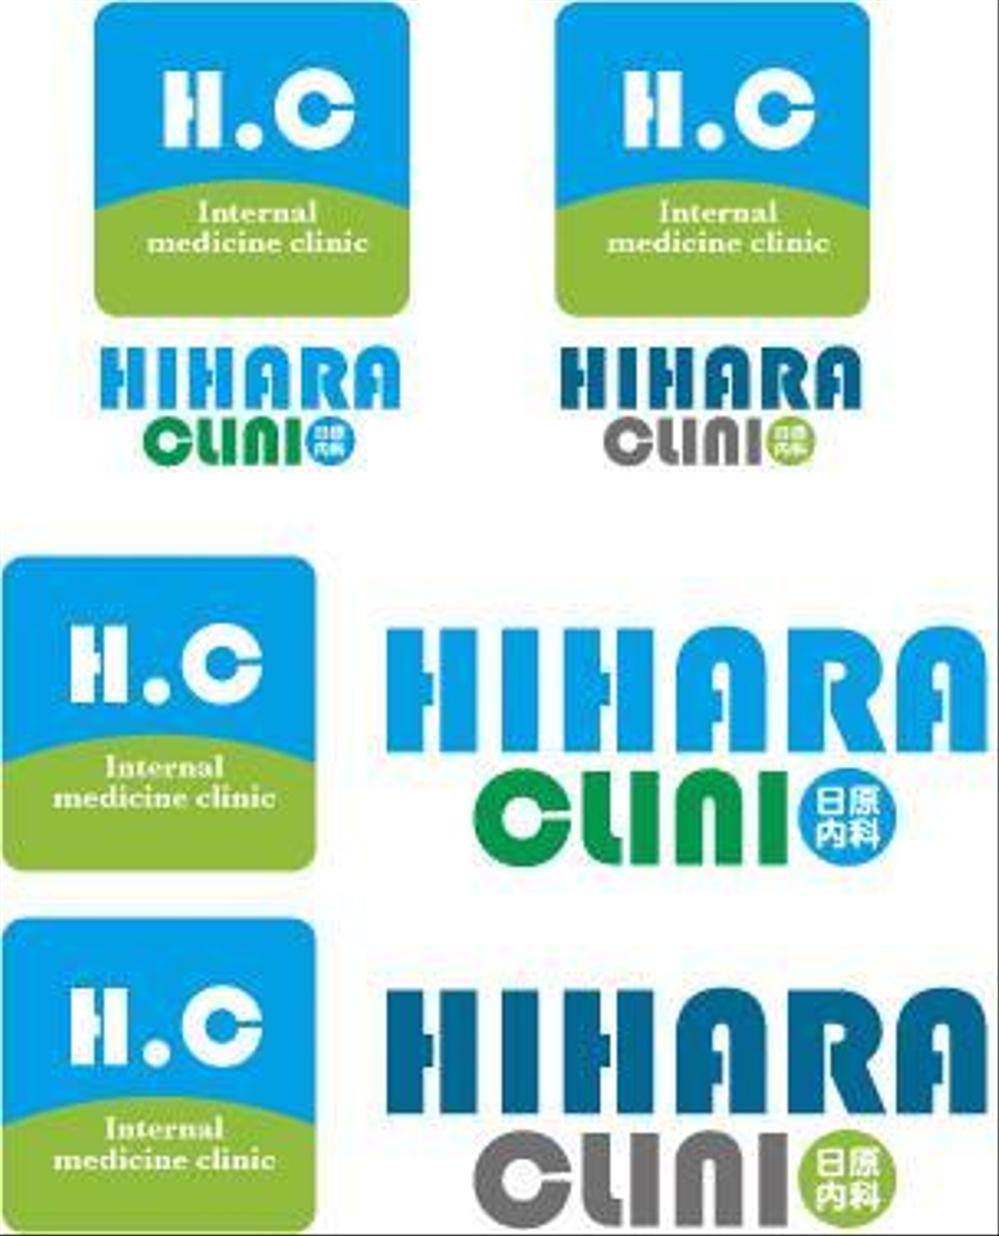 hiharaclinic2.jpg